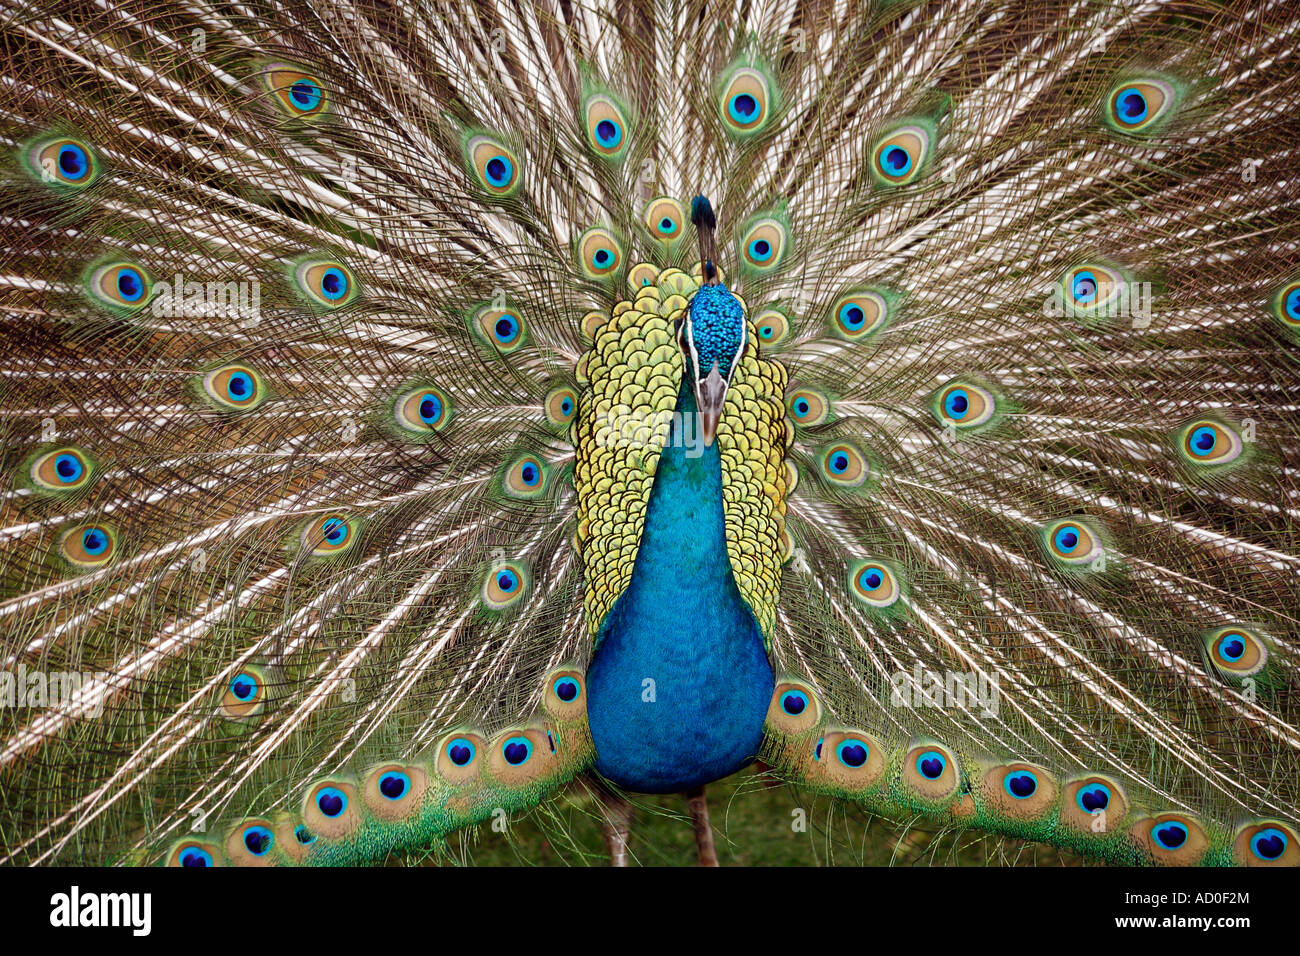 Peacock bird up close Stock Photo